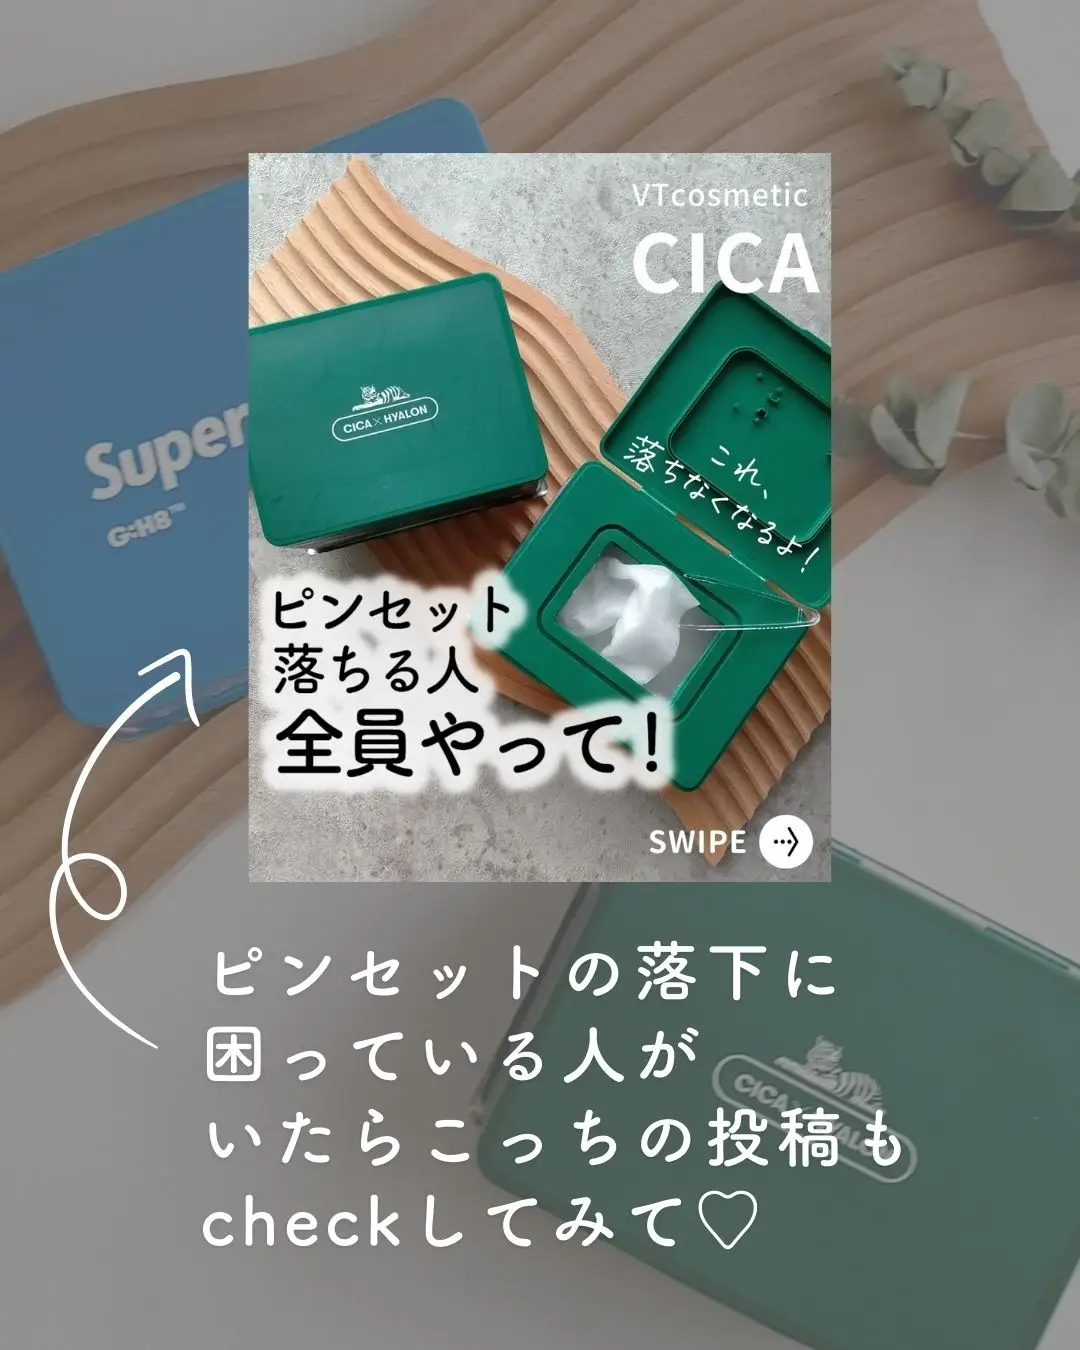 【🉐CICAお得情報つき】CICAパック買ったけど…【青箱の正体】の画像 (7枚目)